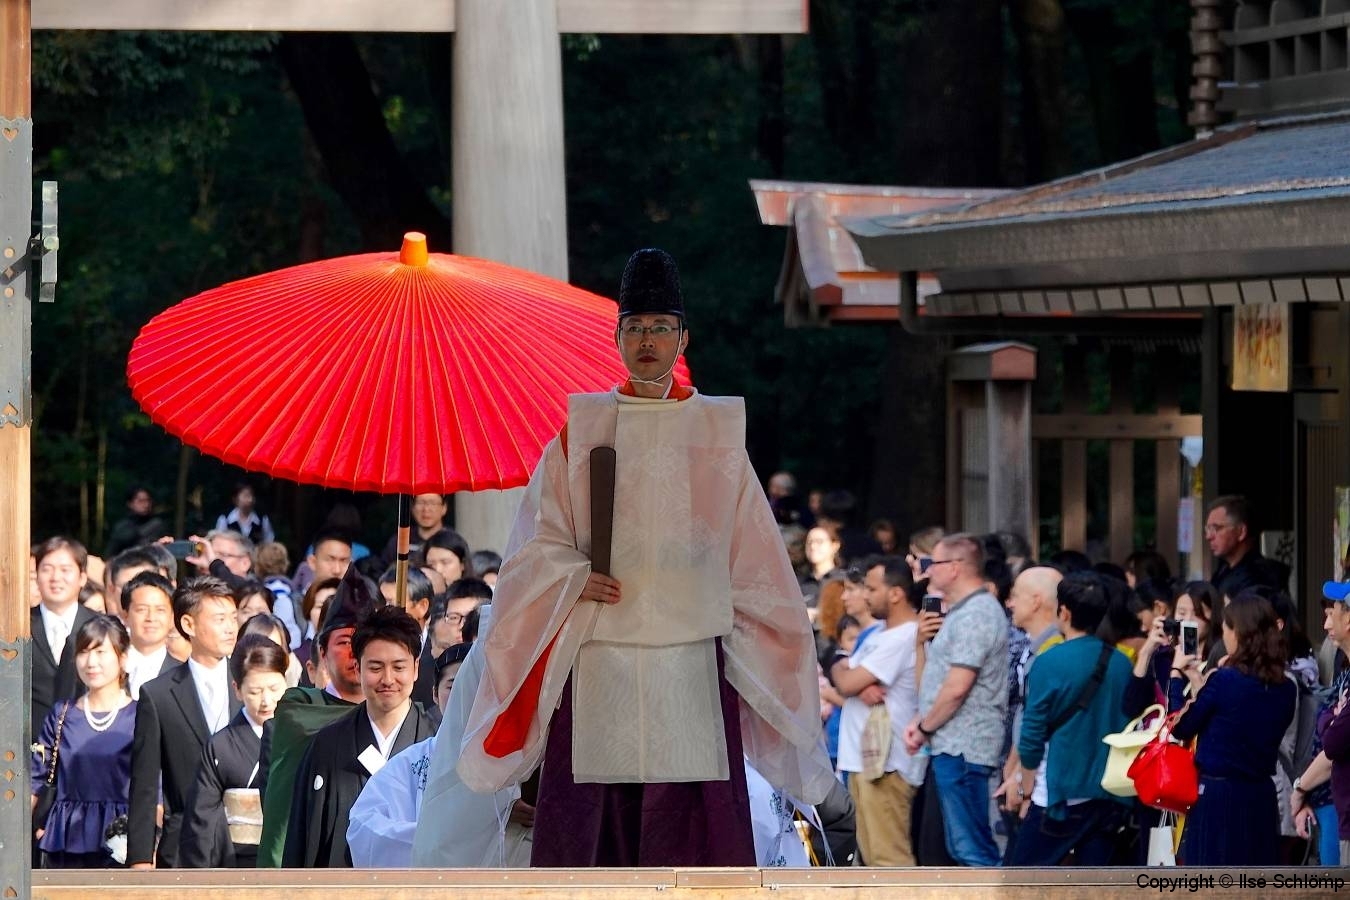 Japan, Tokio, Meiji-Schrein, Traditionelle Hochzeit